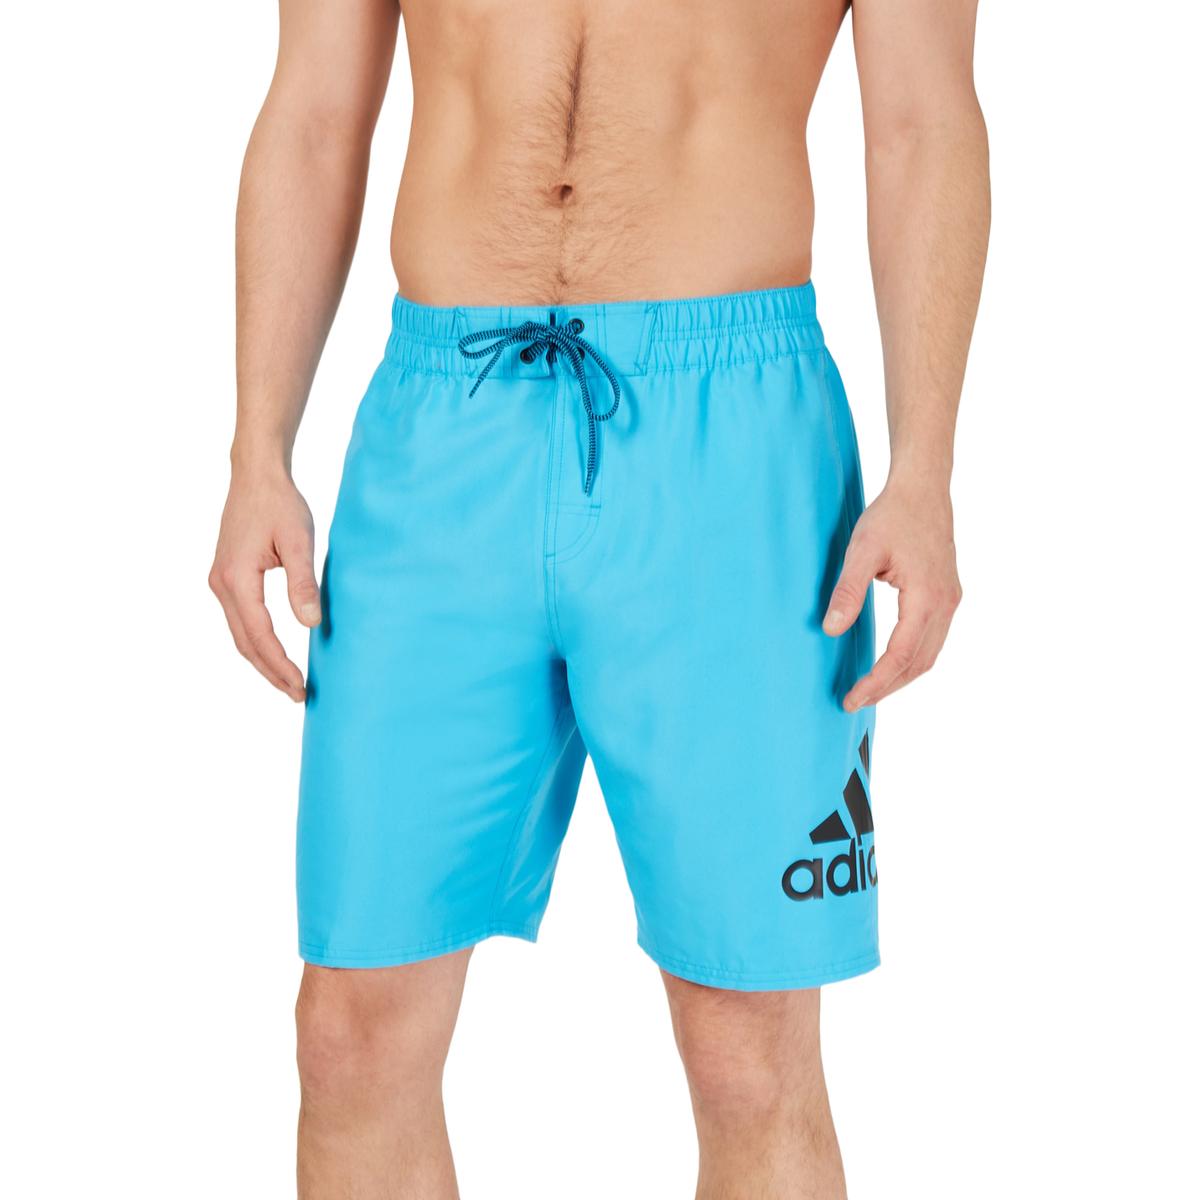 Adidas Mens Blue Logo Beachwear Summer Swim Trunks XL BHFO 6593 | eBay